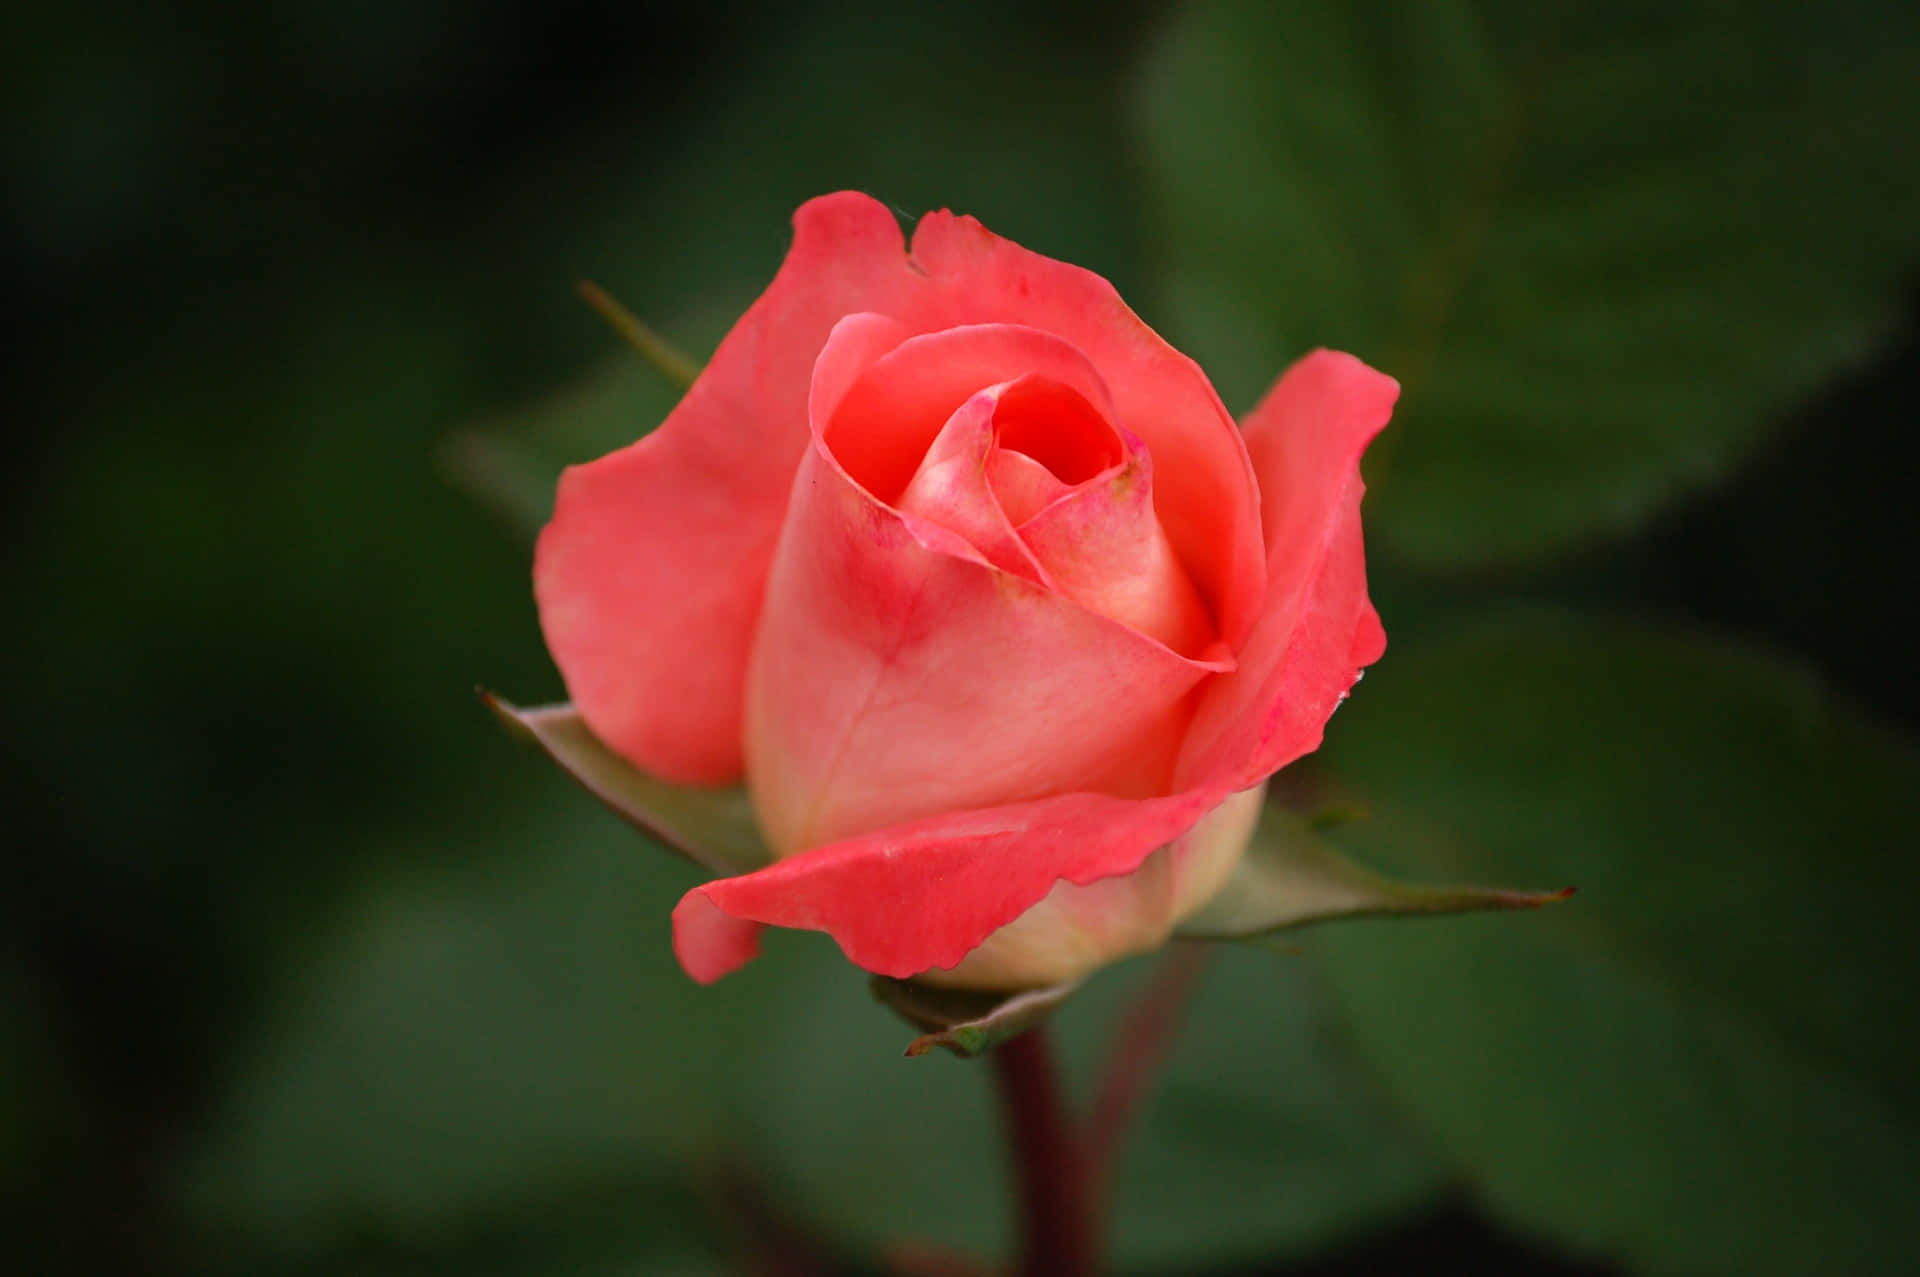 Unavariedad De Belleza: Una Cesta De Coloridas Flores De Rosa.